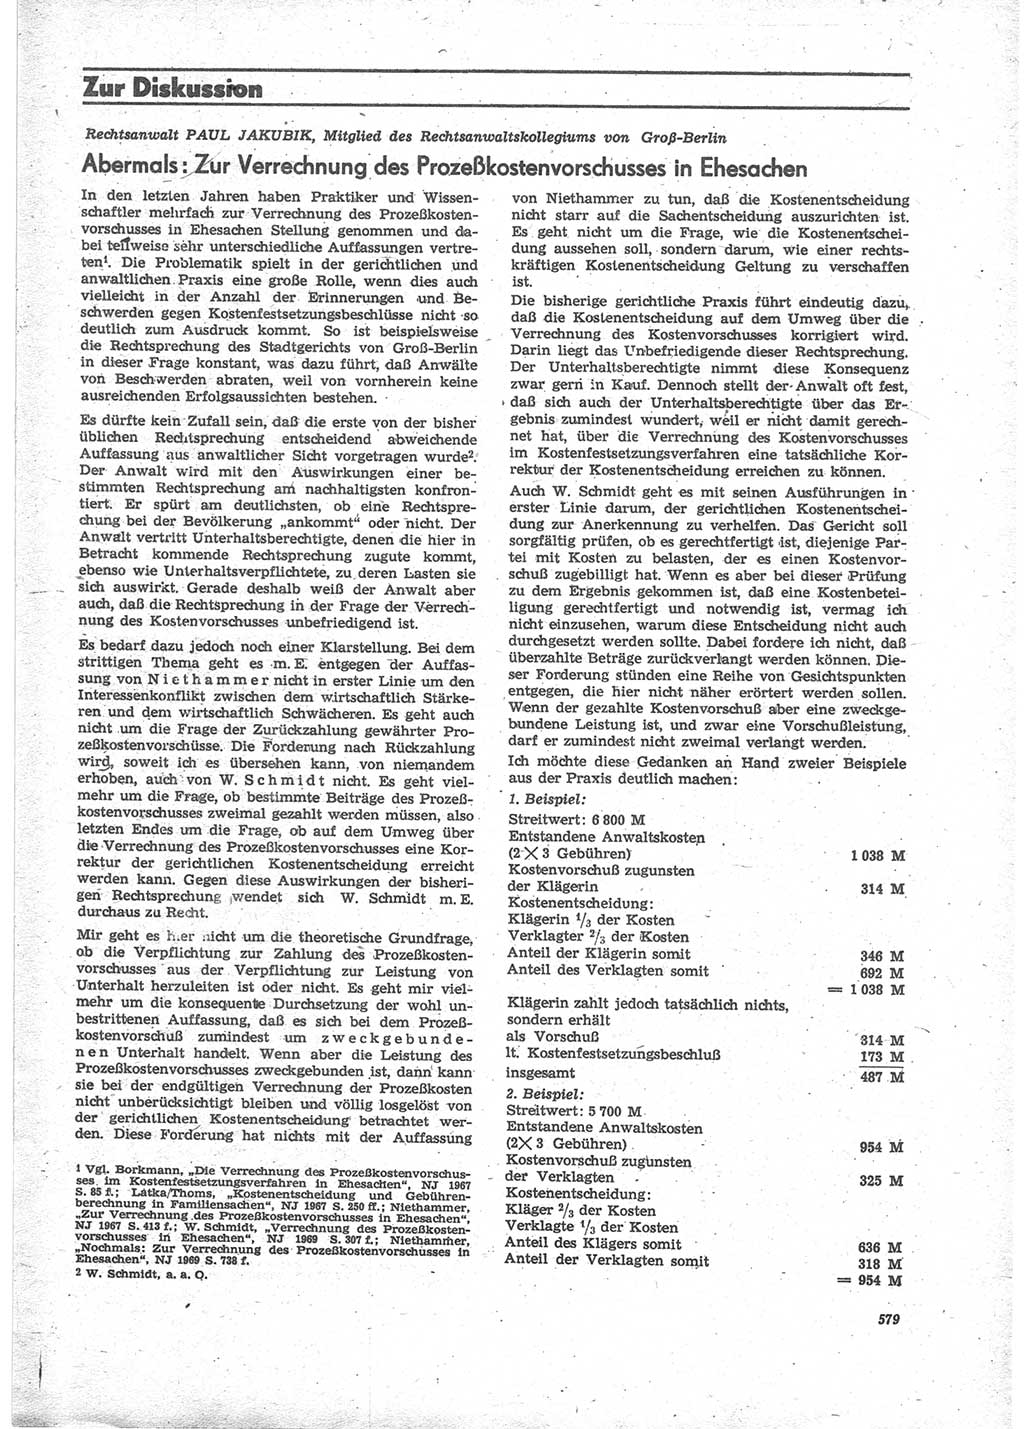 Neue Justiz (NJ), Zeitschrift für Recht und Rechtswissenschaft [Deutsche Demokratische Republik (DDR)], 24. Jahrgang 1970, Seite 579 (NJ DDR 1970, S. 579)